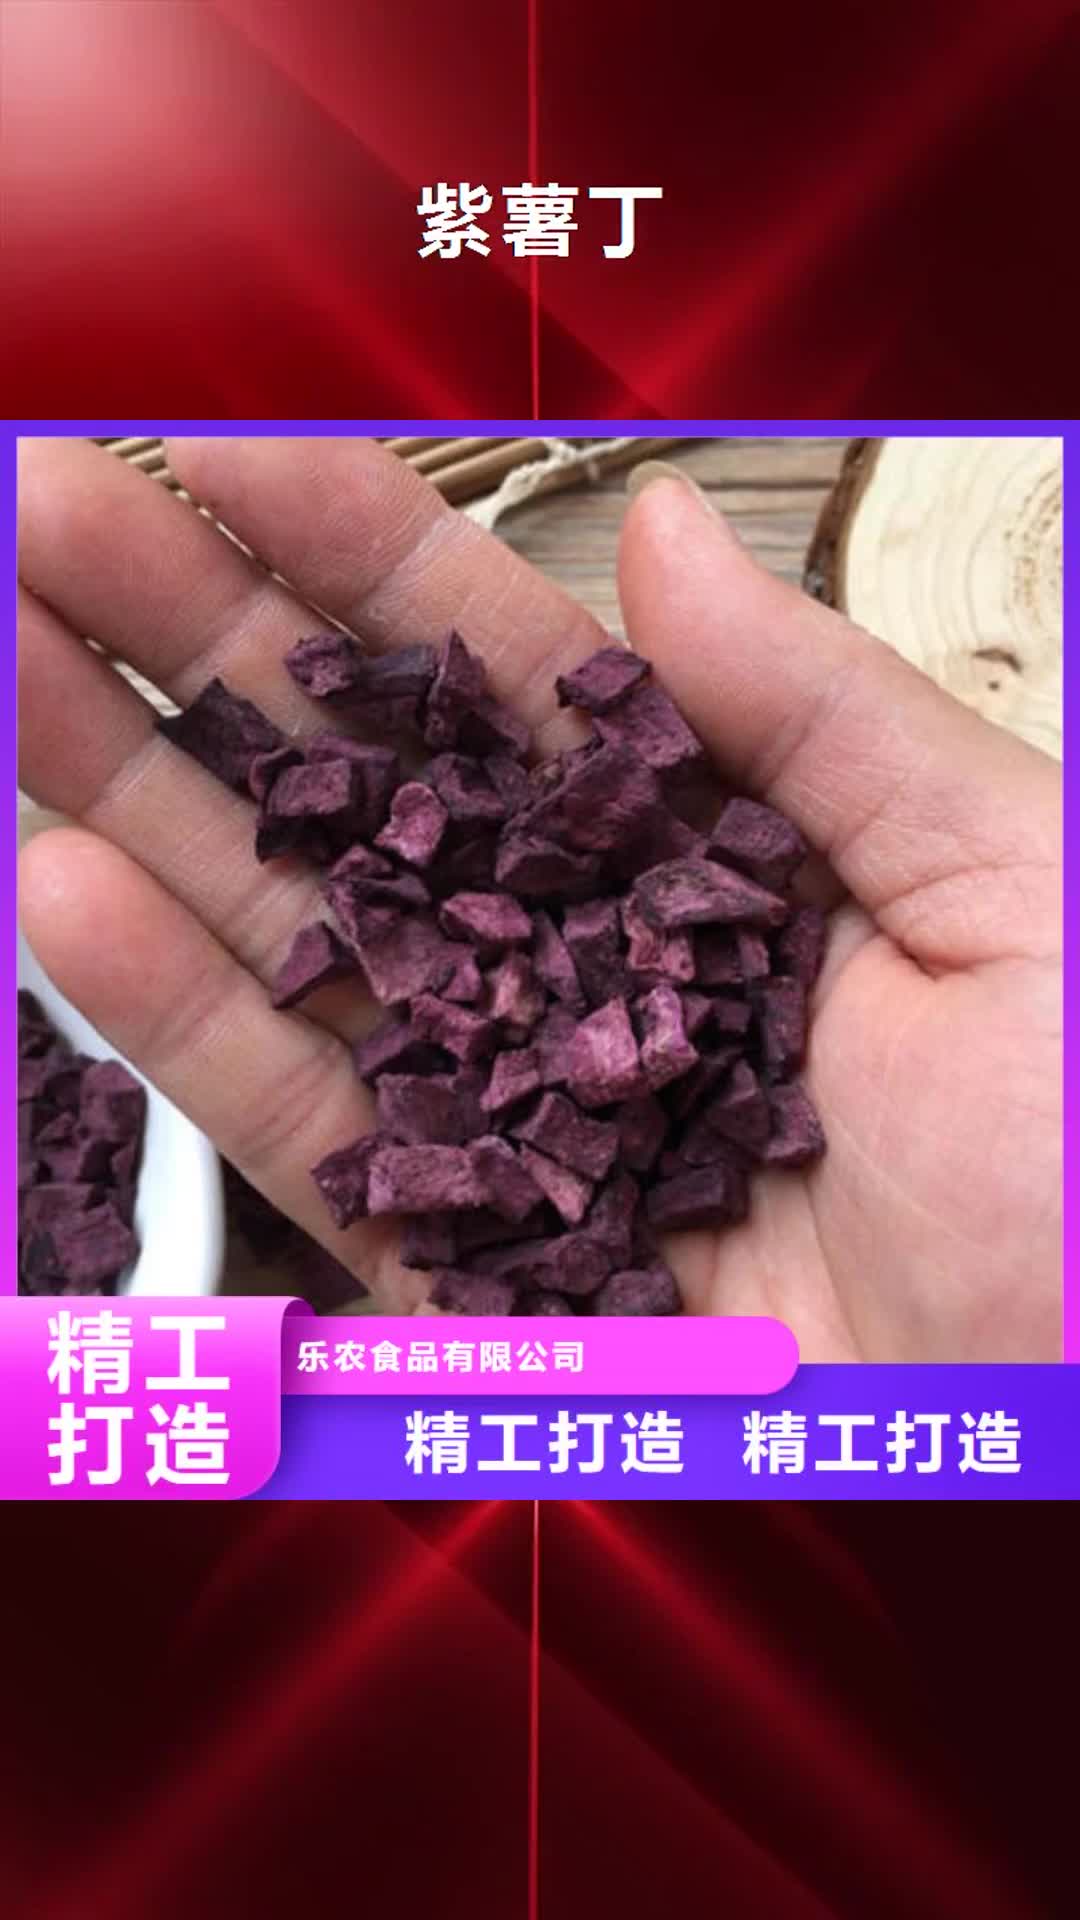 江门【紫薯丁】胡萝卜粉厂家细节展示